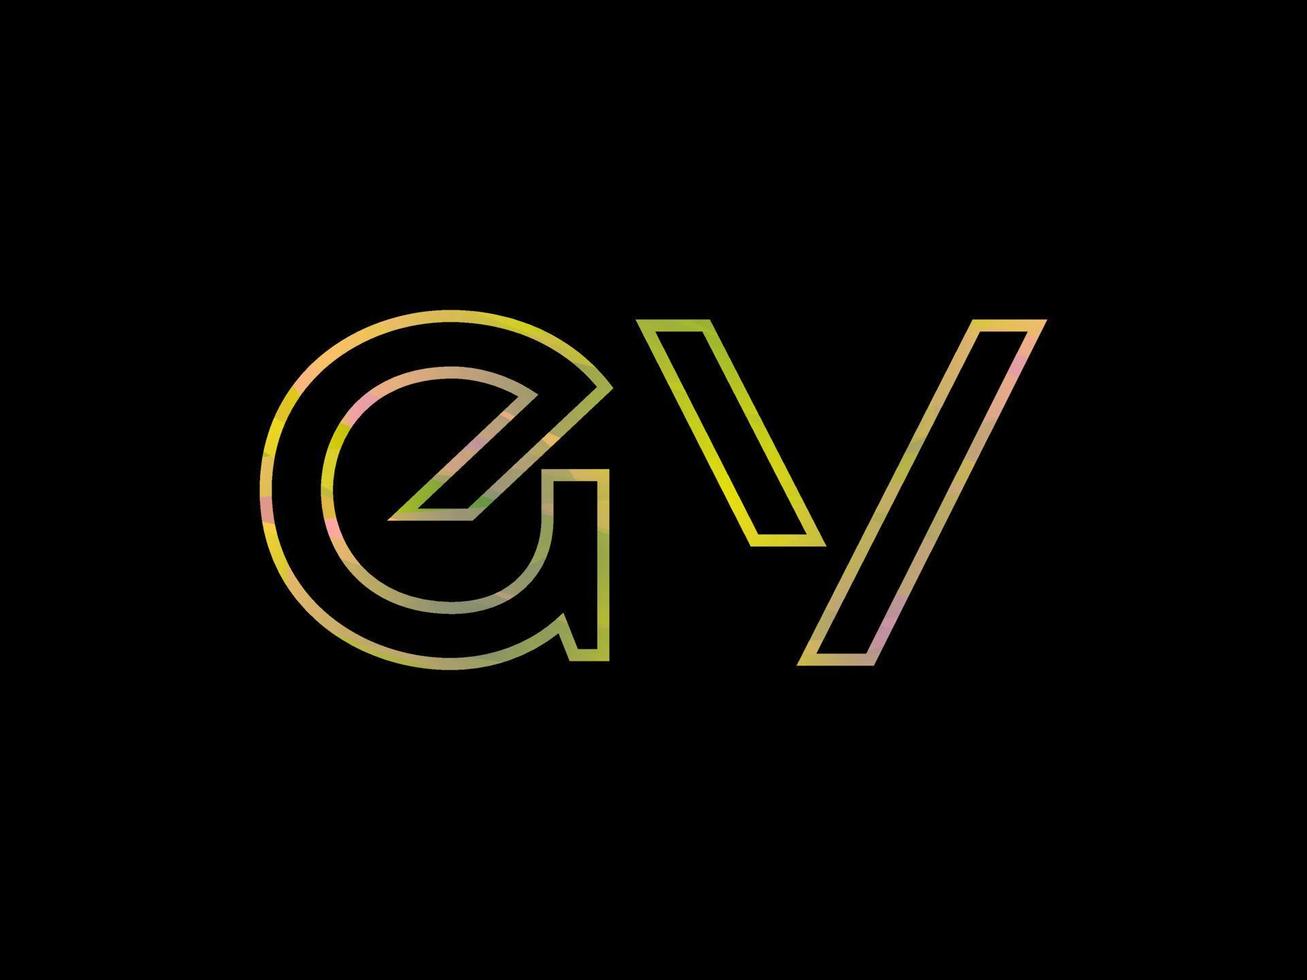 logotipo da carta gv com vetor de textura de arco-íris colorido. vetor profissional